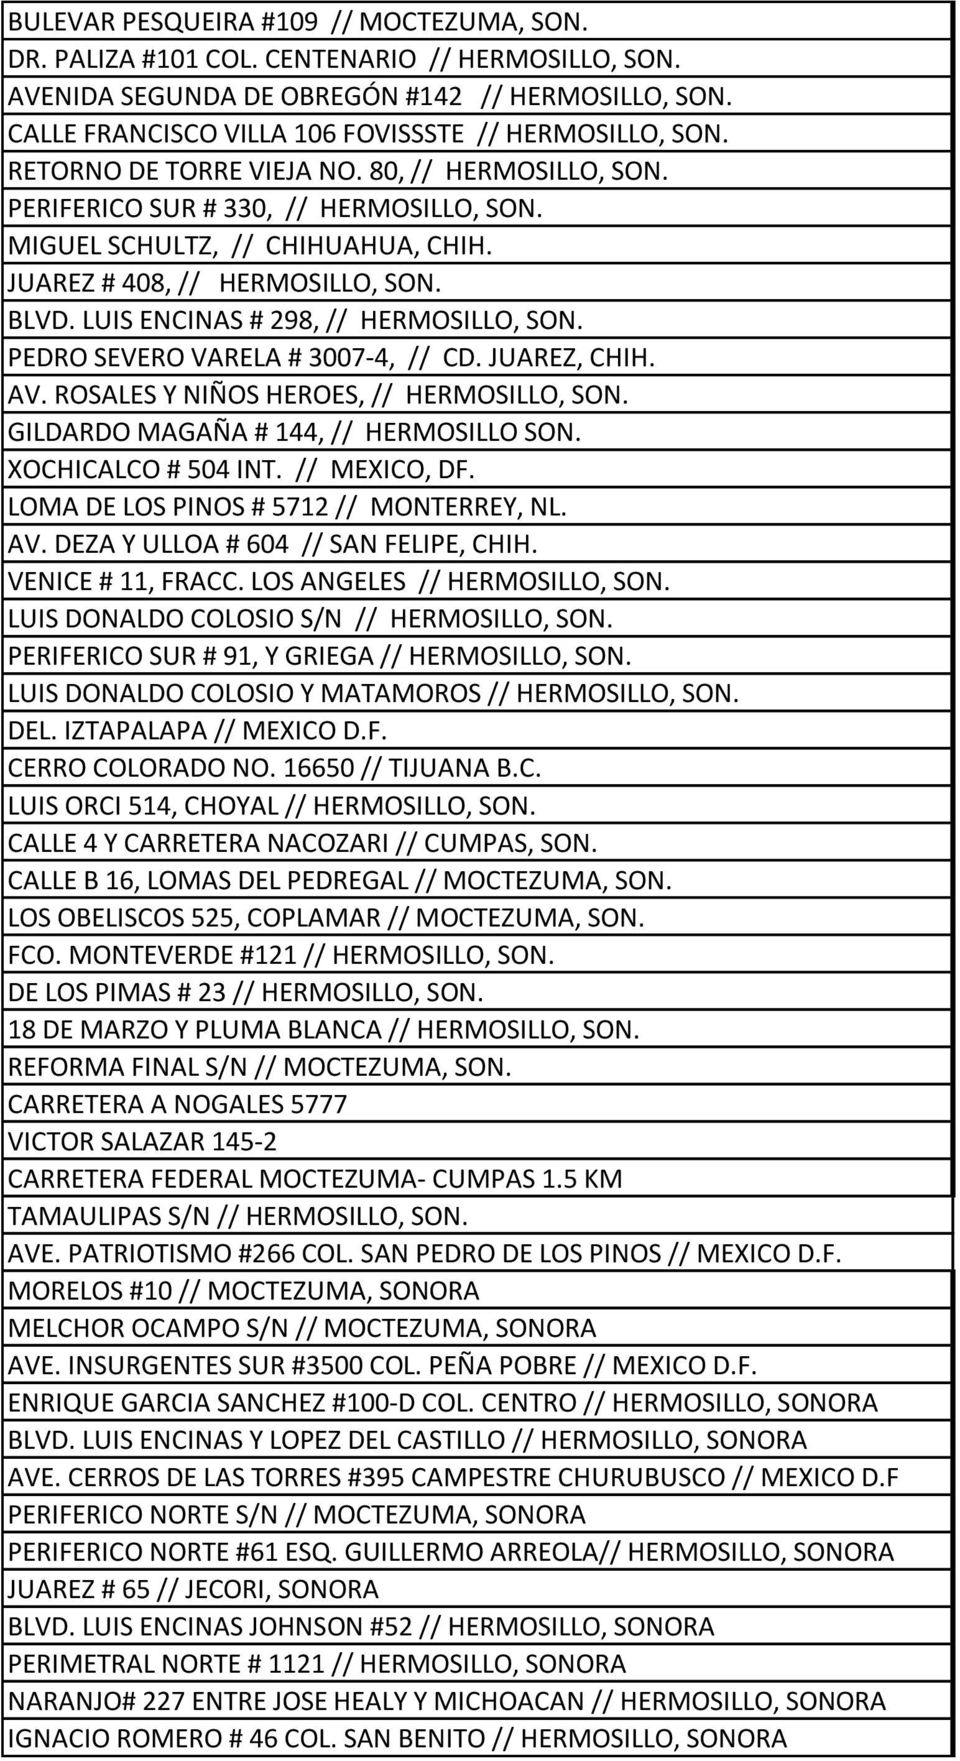 JUAREZ # 408, // HERMOSILLO, SON. BLVD. LUIS ENCINAS # 298, // HERMOSILLO, SON. PEDRO SEVERO VARELA # 3007-4, // CD. JUAREZ, CHIH. AV. ROSALES Y NIÑOS HEROES, // HERMOSILLO, SON.